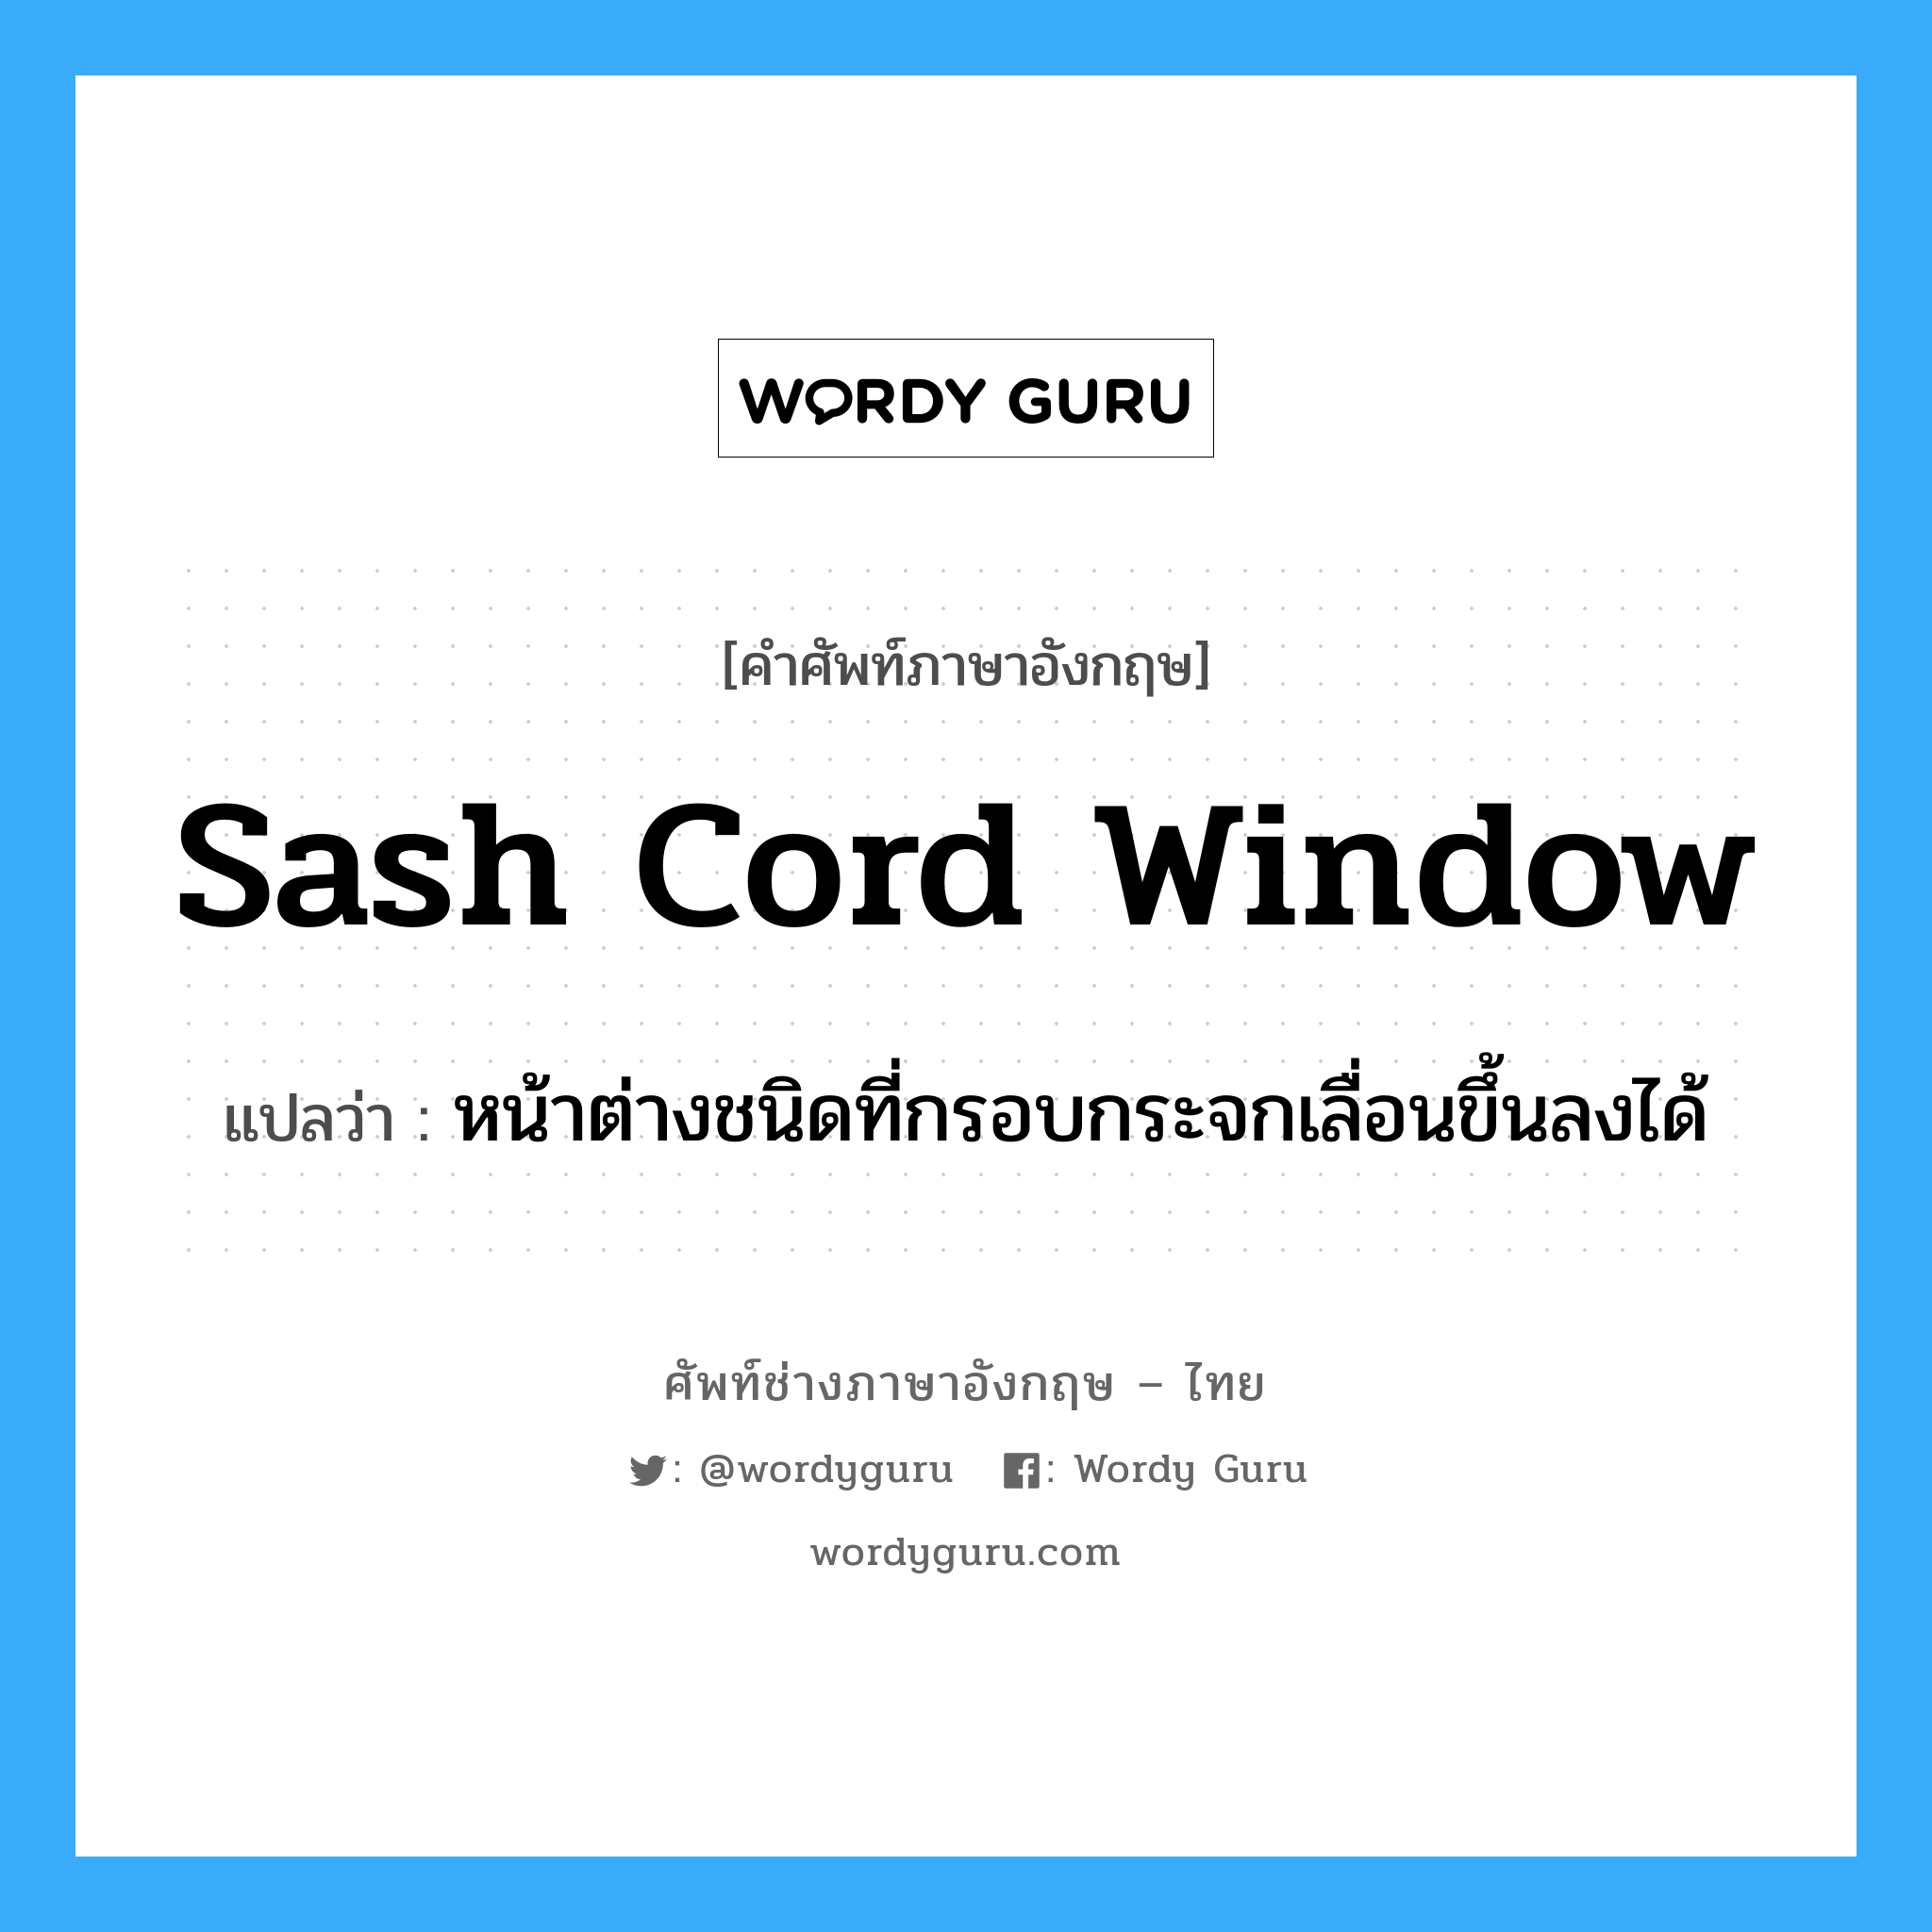 sash cord window แปลว่า?, คำศัพท์ช่างภาษาอังกฤษ - ไทย sash cord window คำศัพท์ภาษาอังกฤษ sash cord window แปลว่า หน้าต่างชนิดที่กรอบกระจกเลื่อนขึ้นลงได้